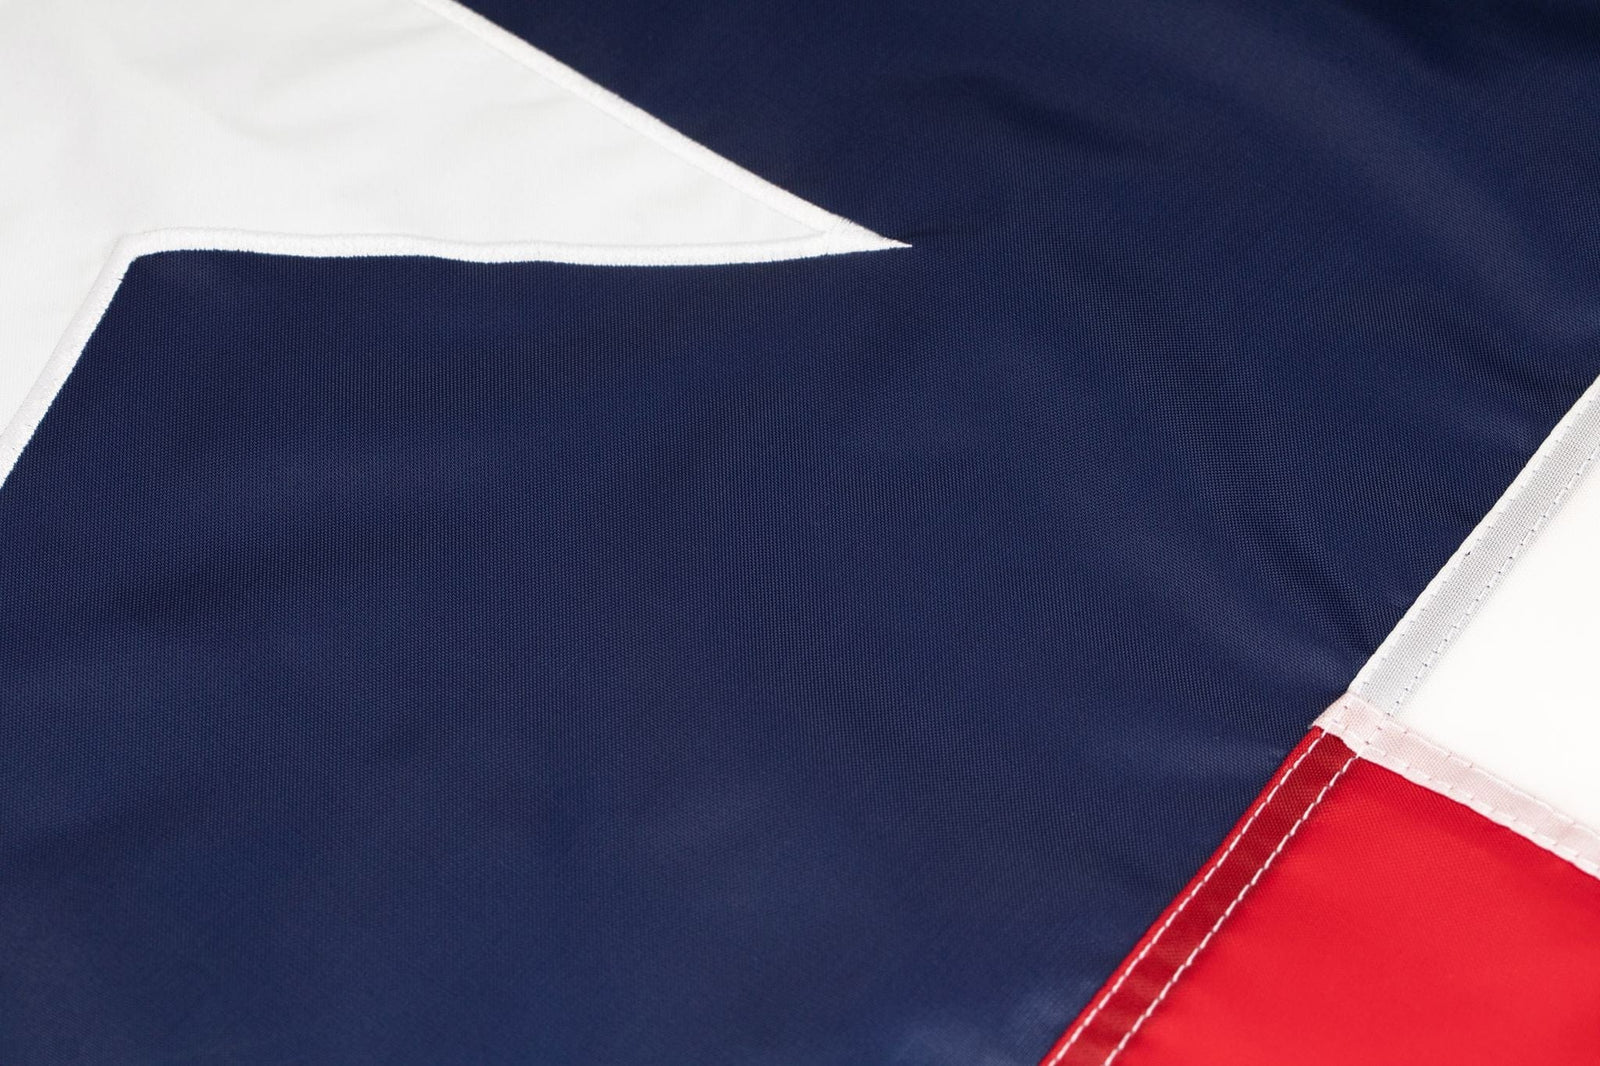 3' x 5' Texas Flag